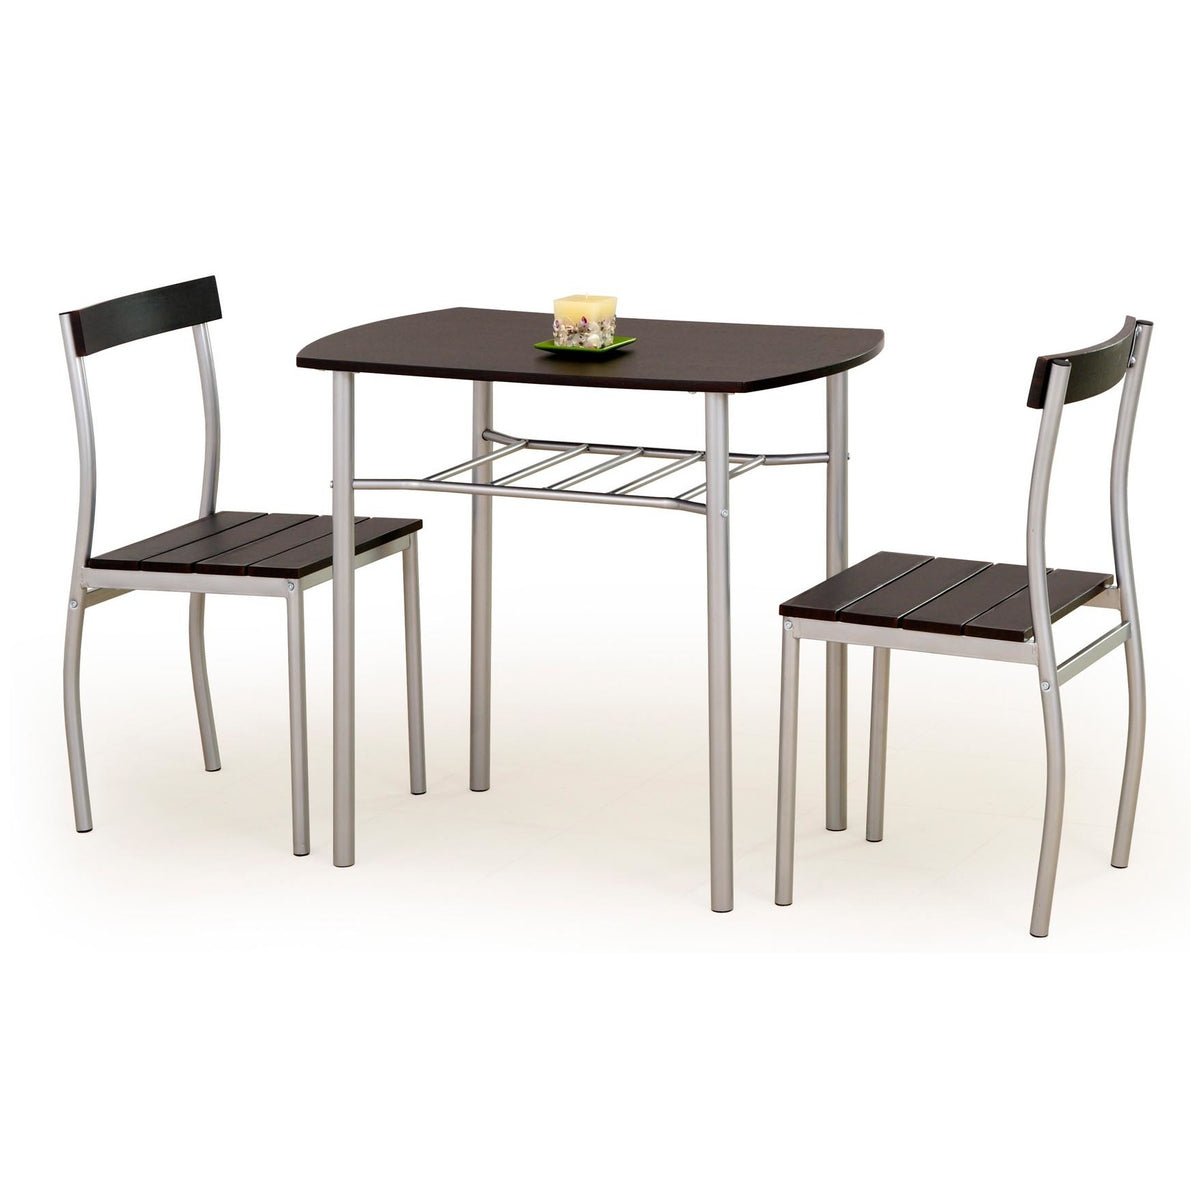 Jídelní set Marslo - 2x židle, 1x stůl (wenge)